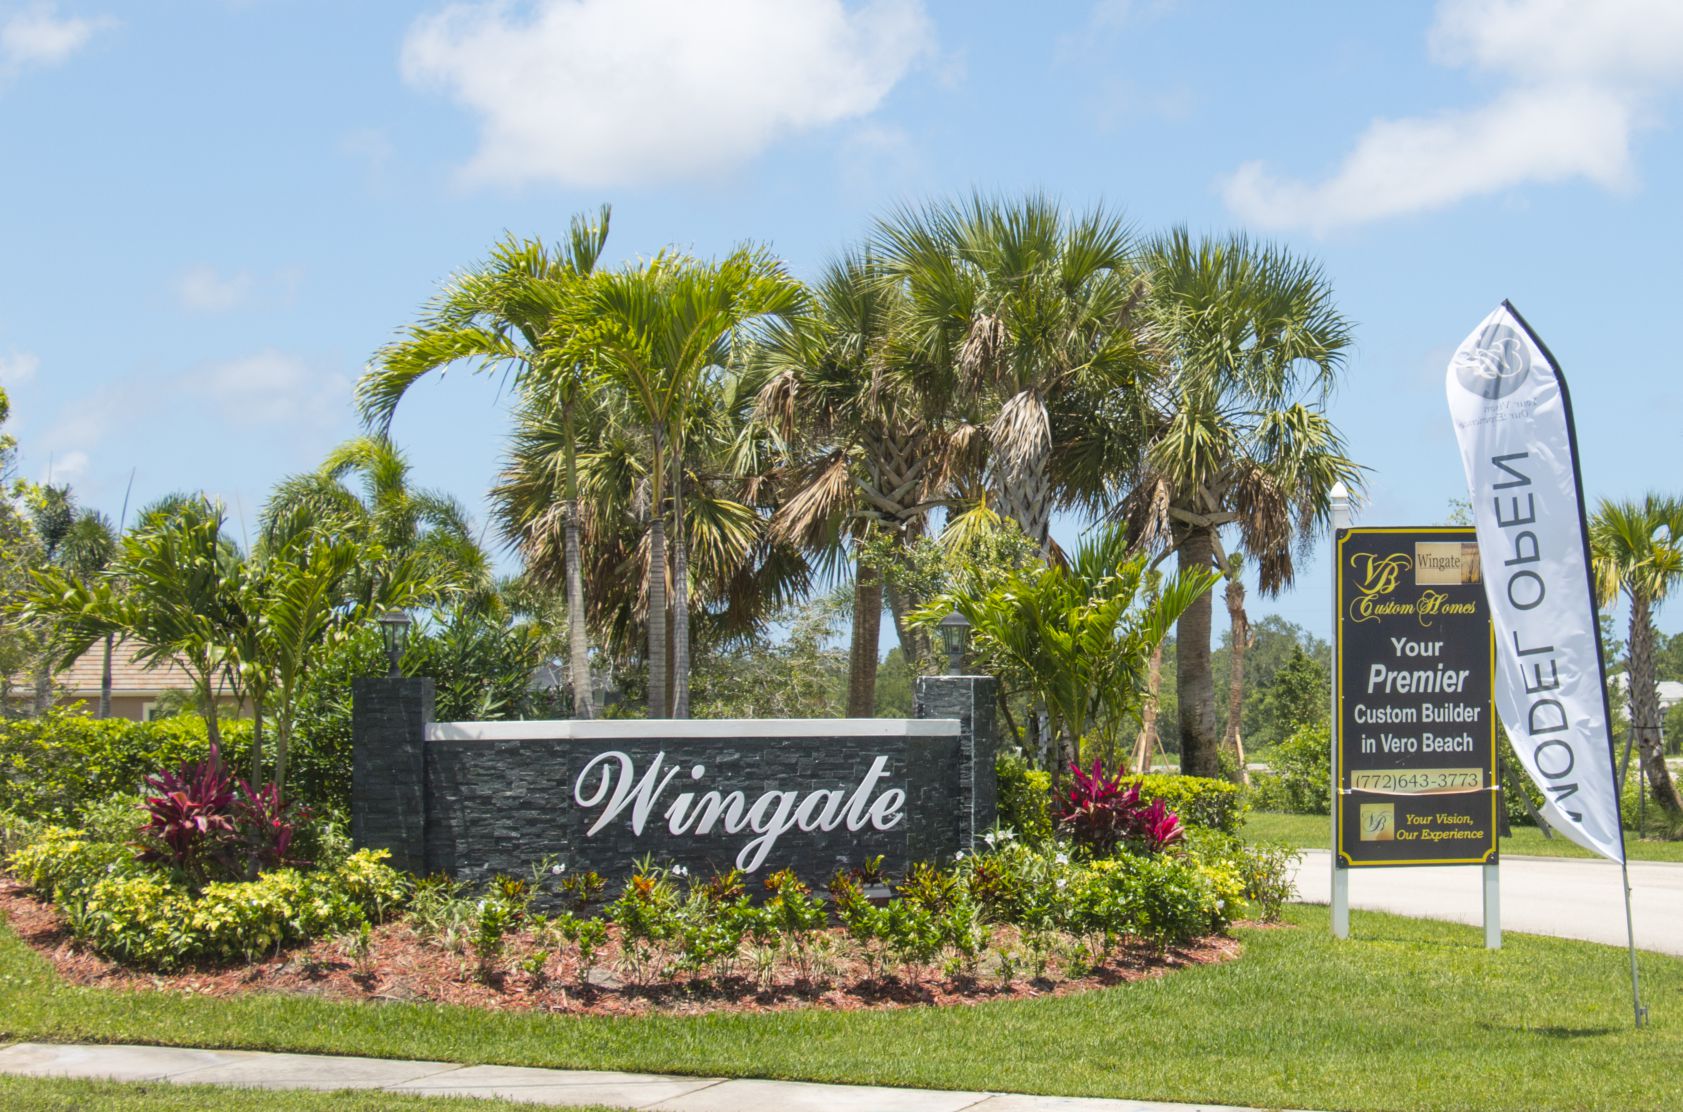 Wingate in Vero Beach, FL